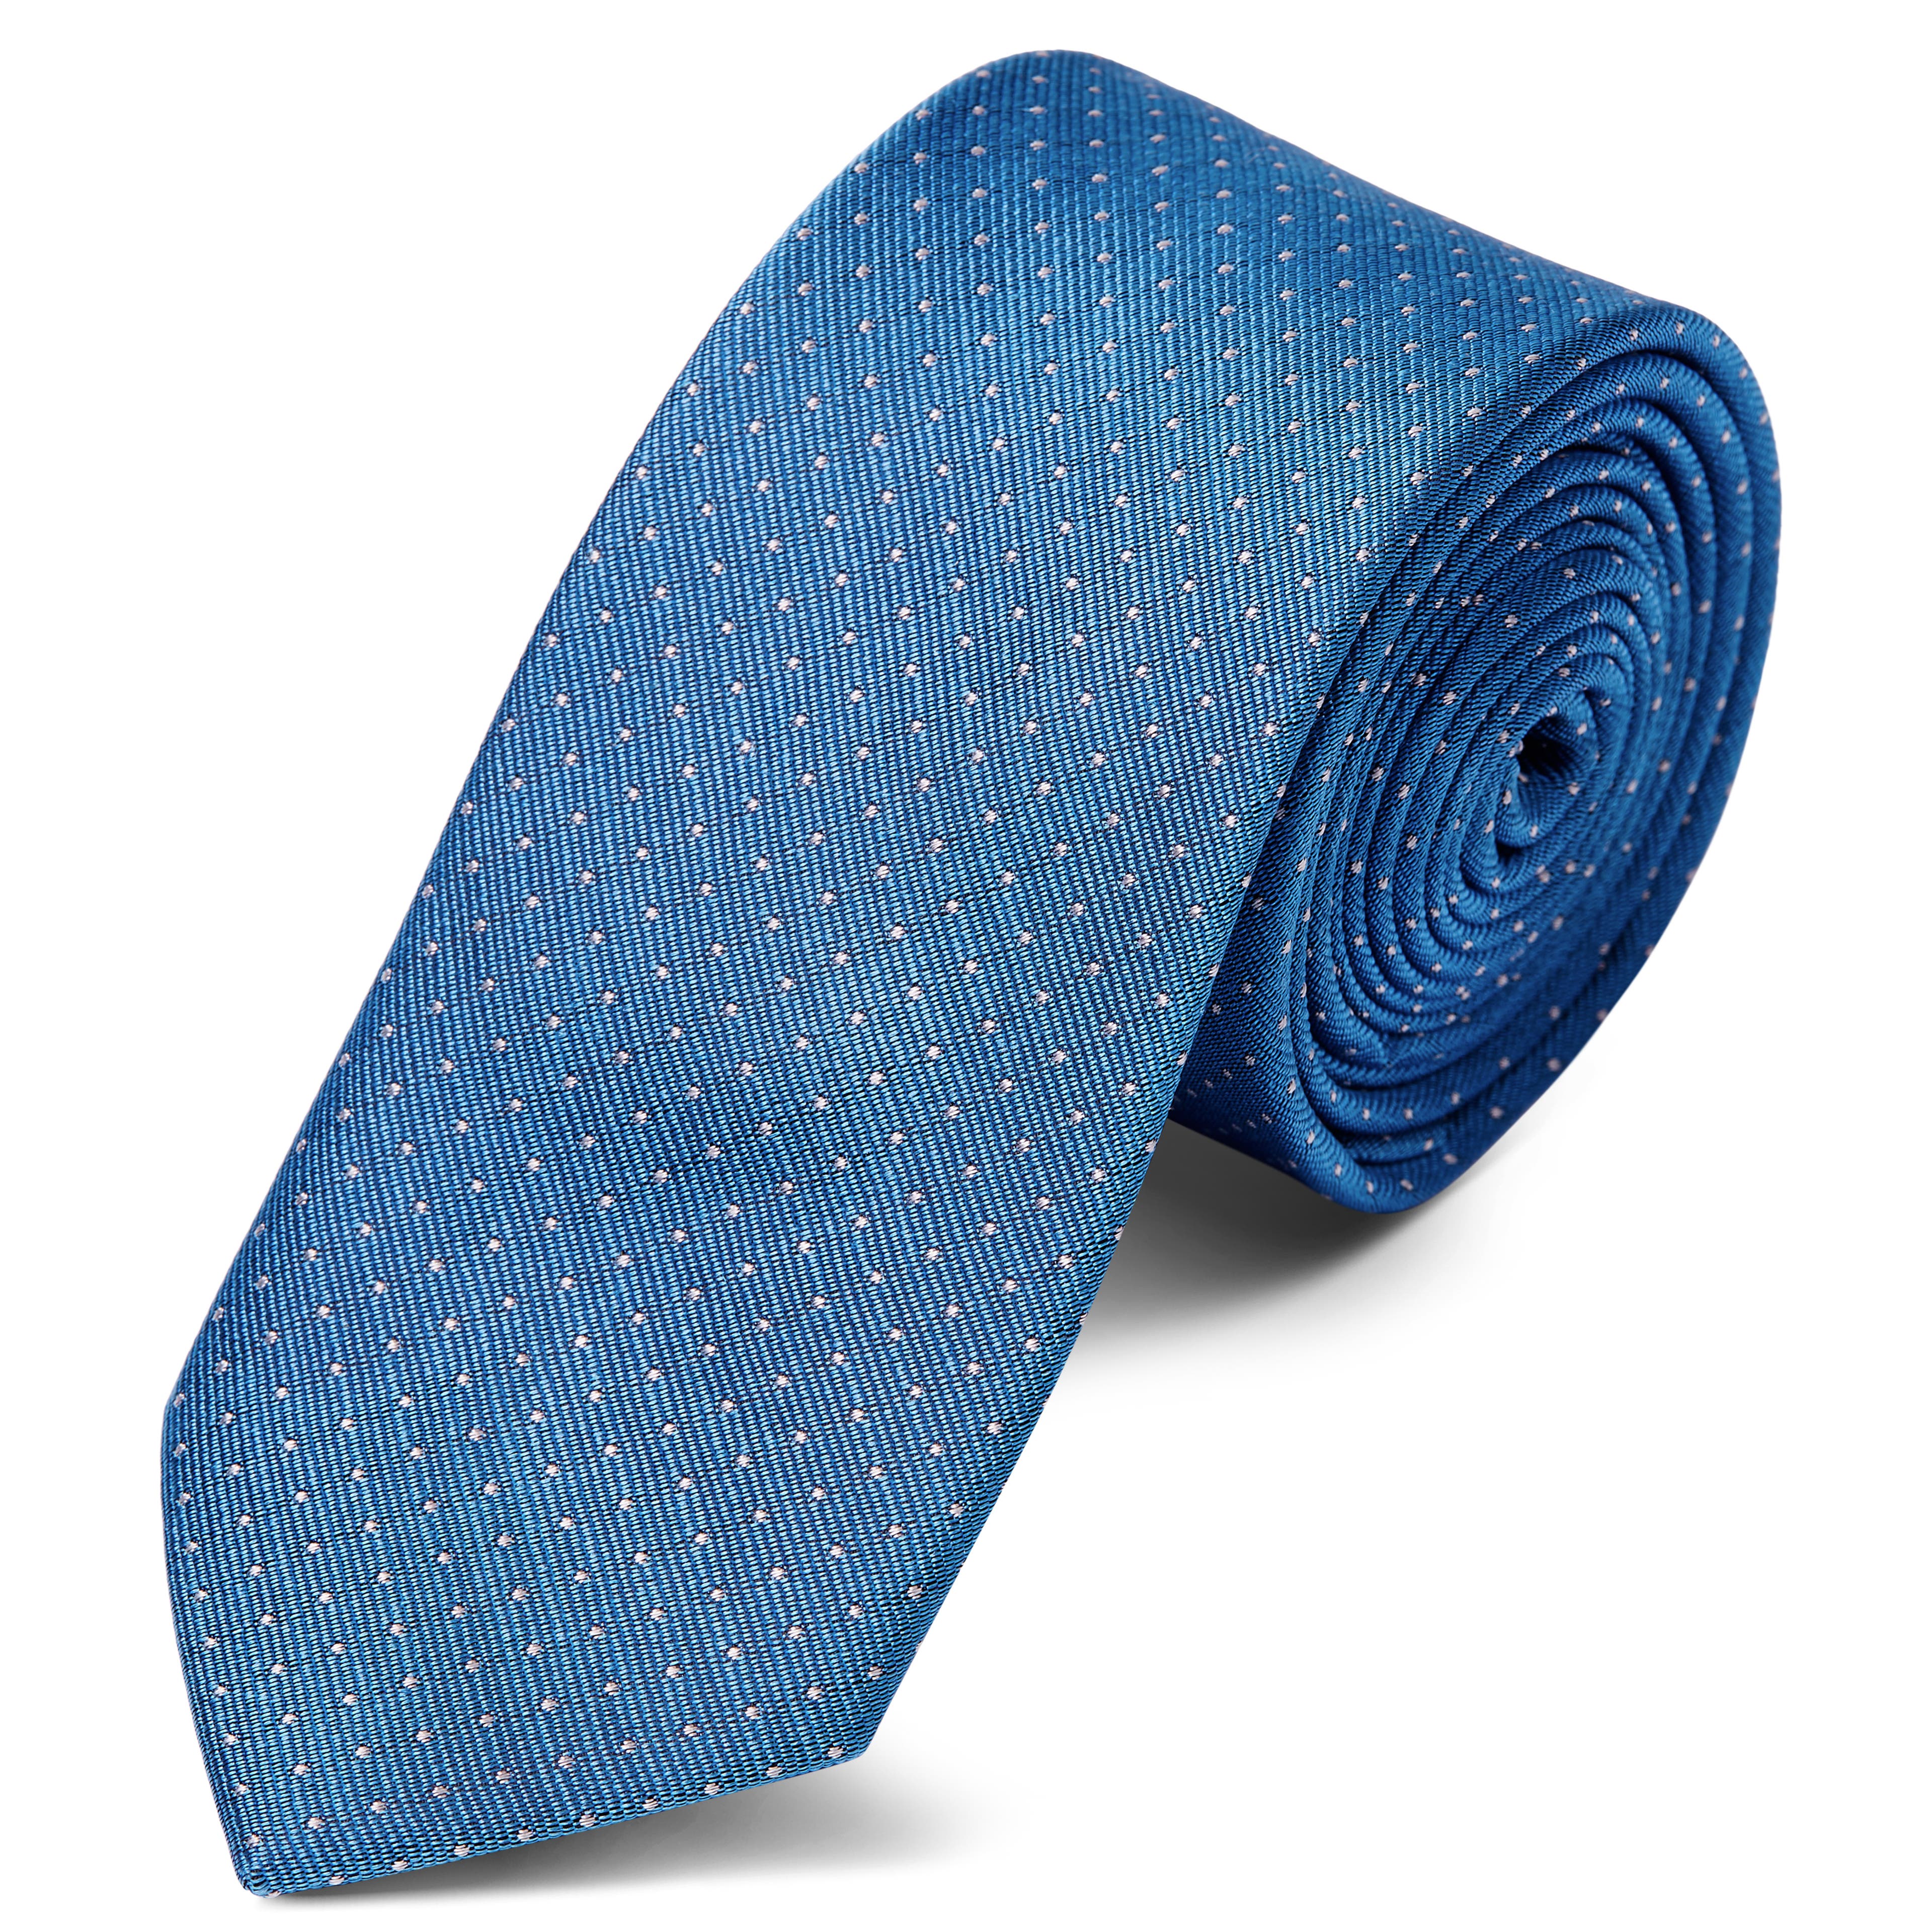 Kék selyem nyakkendő fehér pöttyös mintával - 6 cm